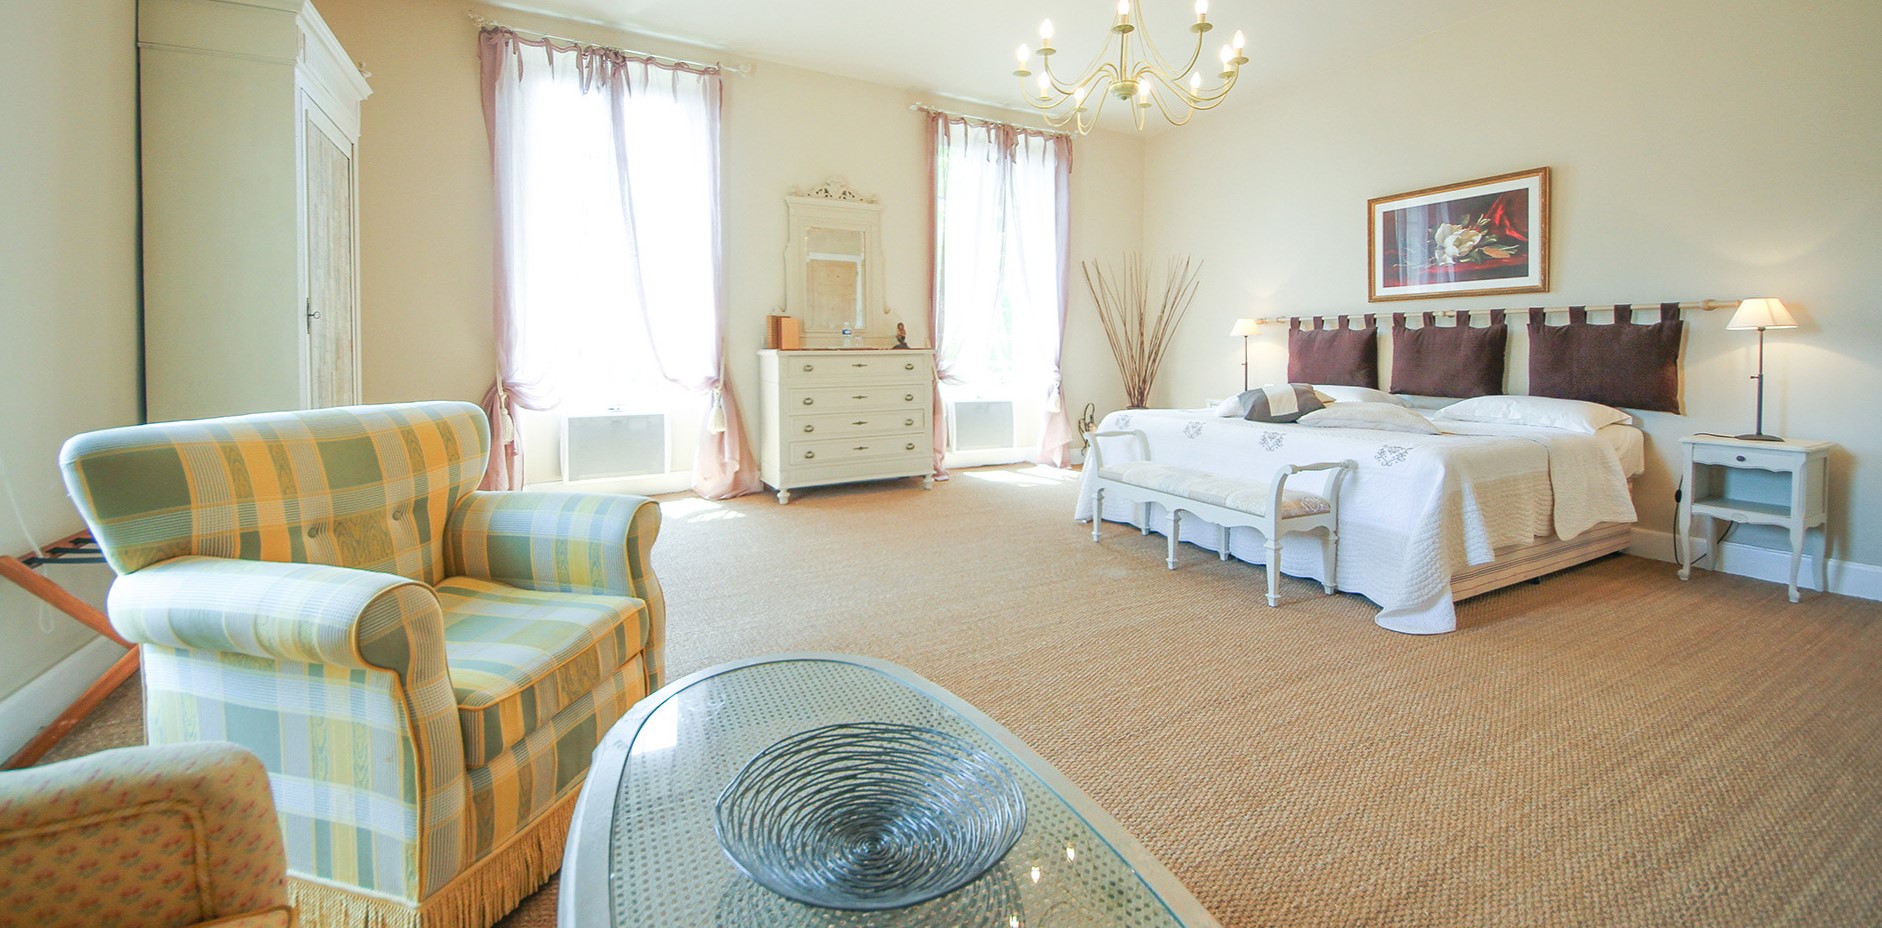 Спальню в стиле прованс рекомендуется оформить в светлой цветовой гамме